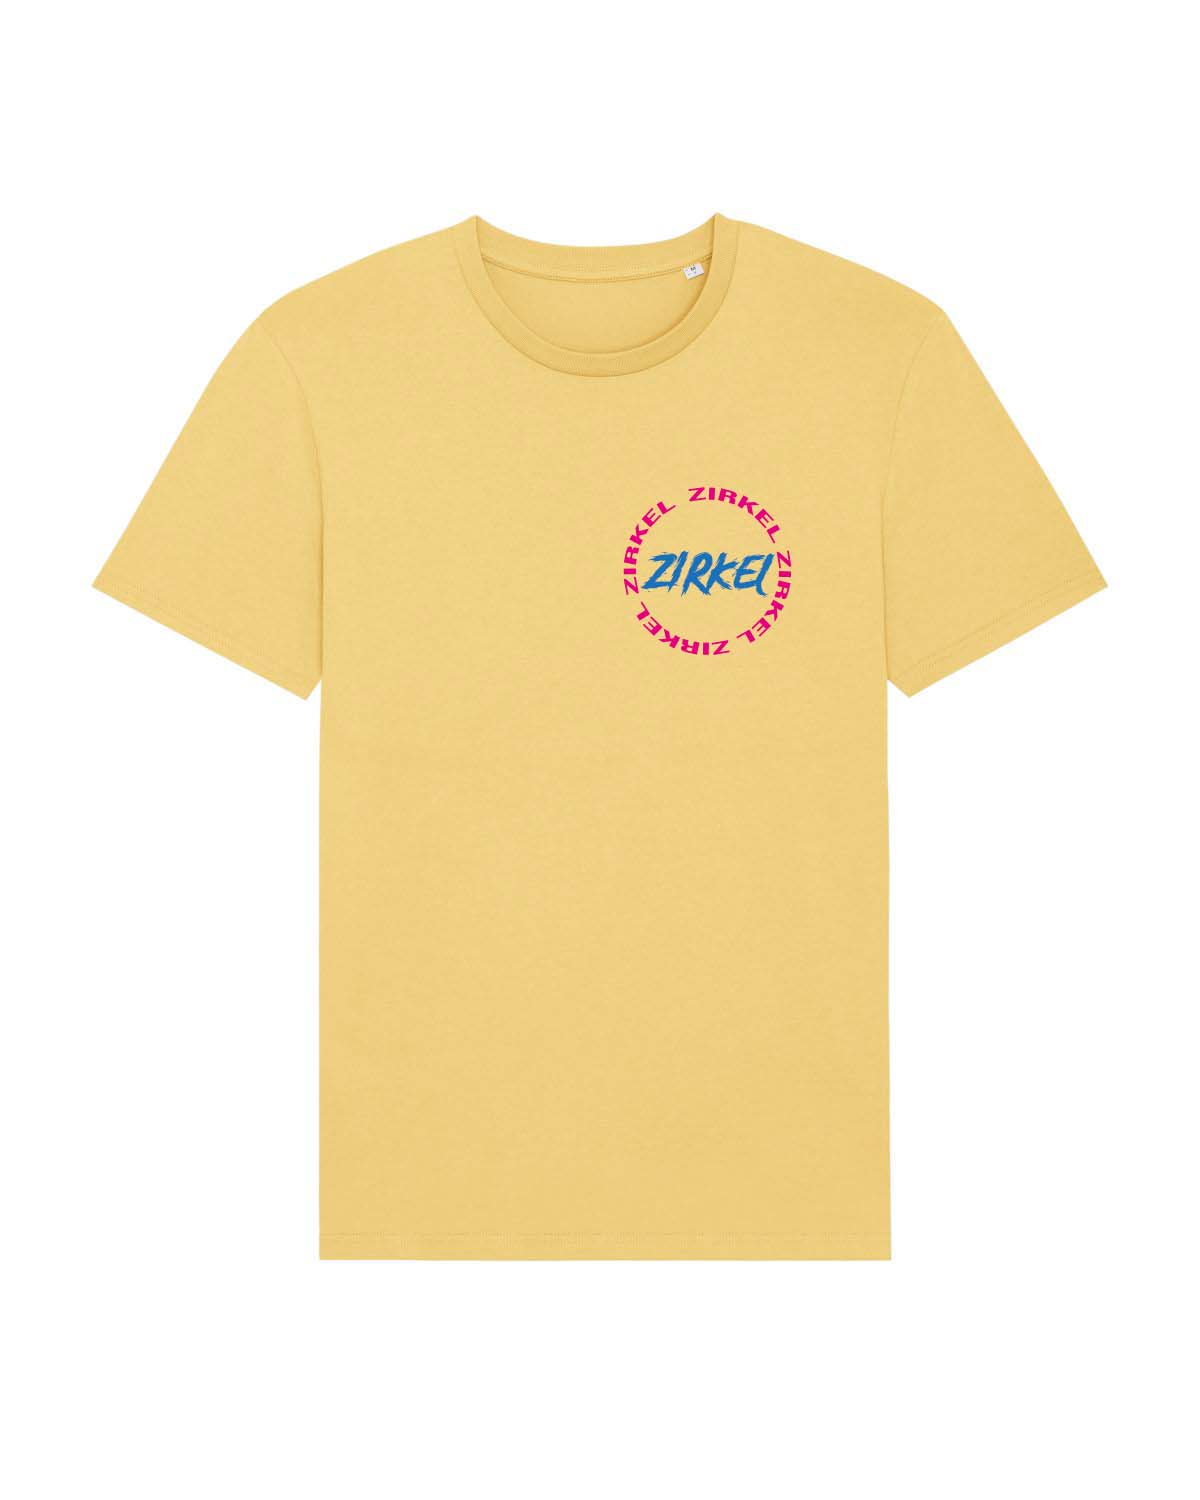 Kreis Untailliertes Shirt yellow